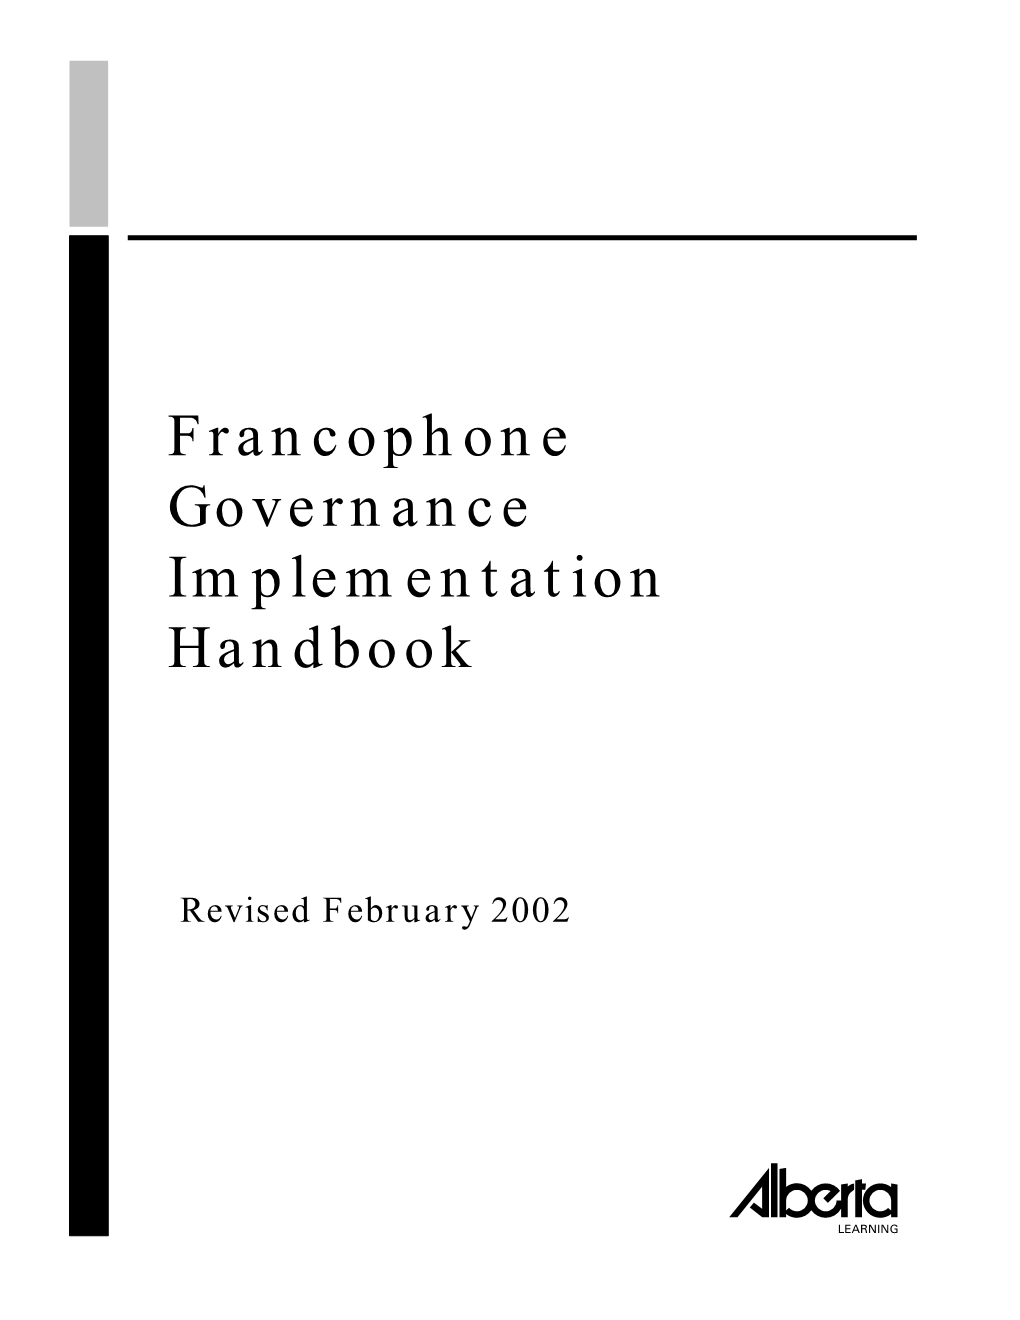 Francophone Governance Implementation Handbook